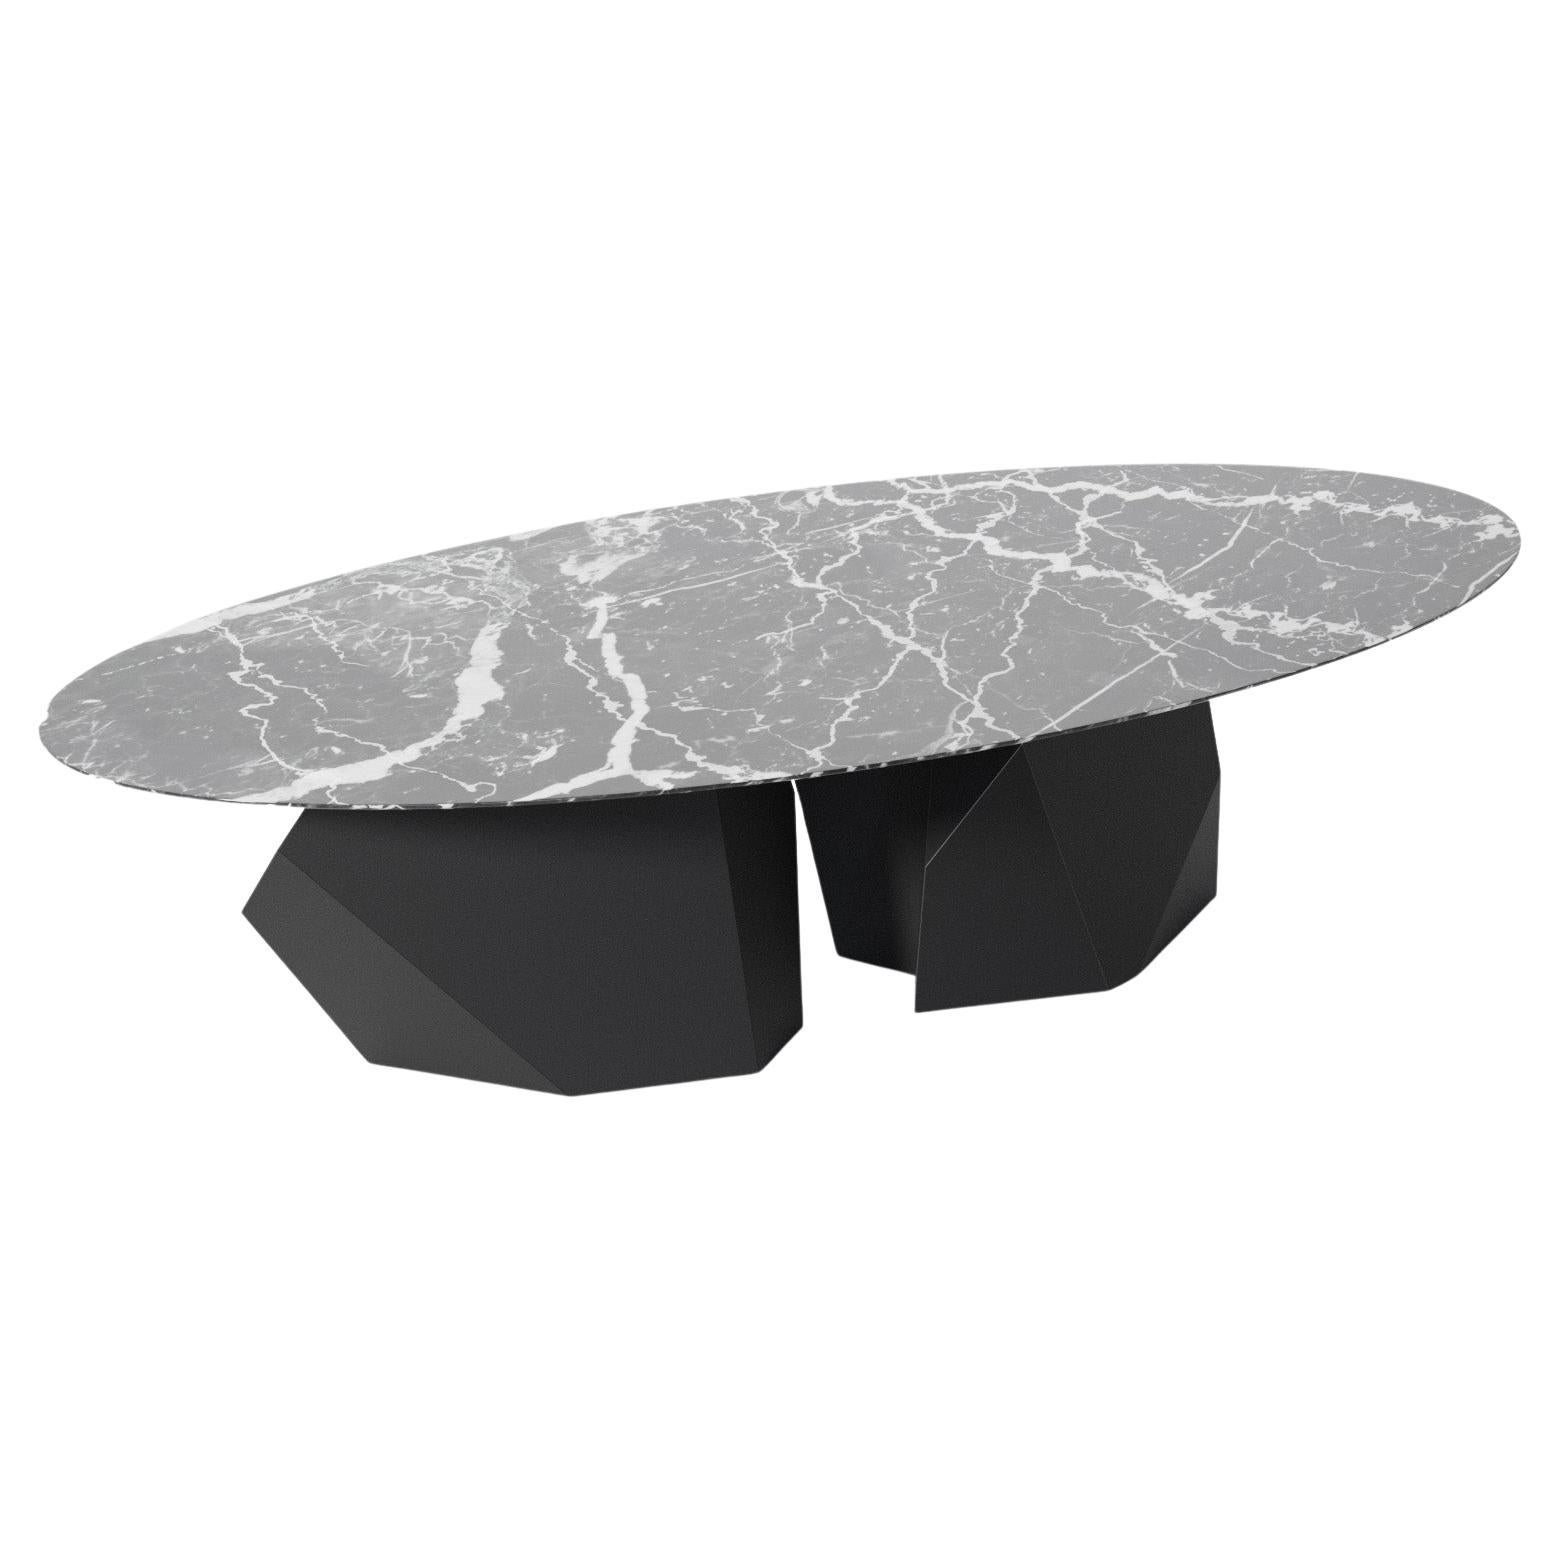 Table basse moderne du XXIe siècle en marbre et finition noire mate